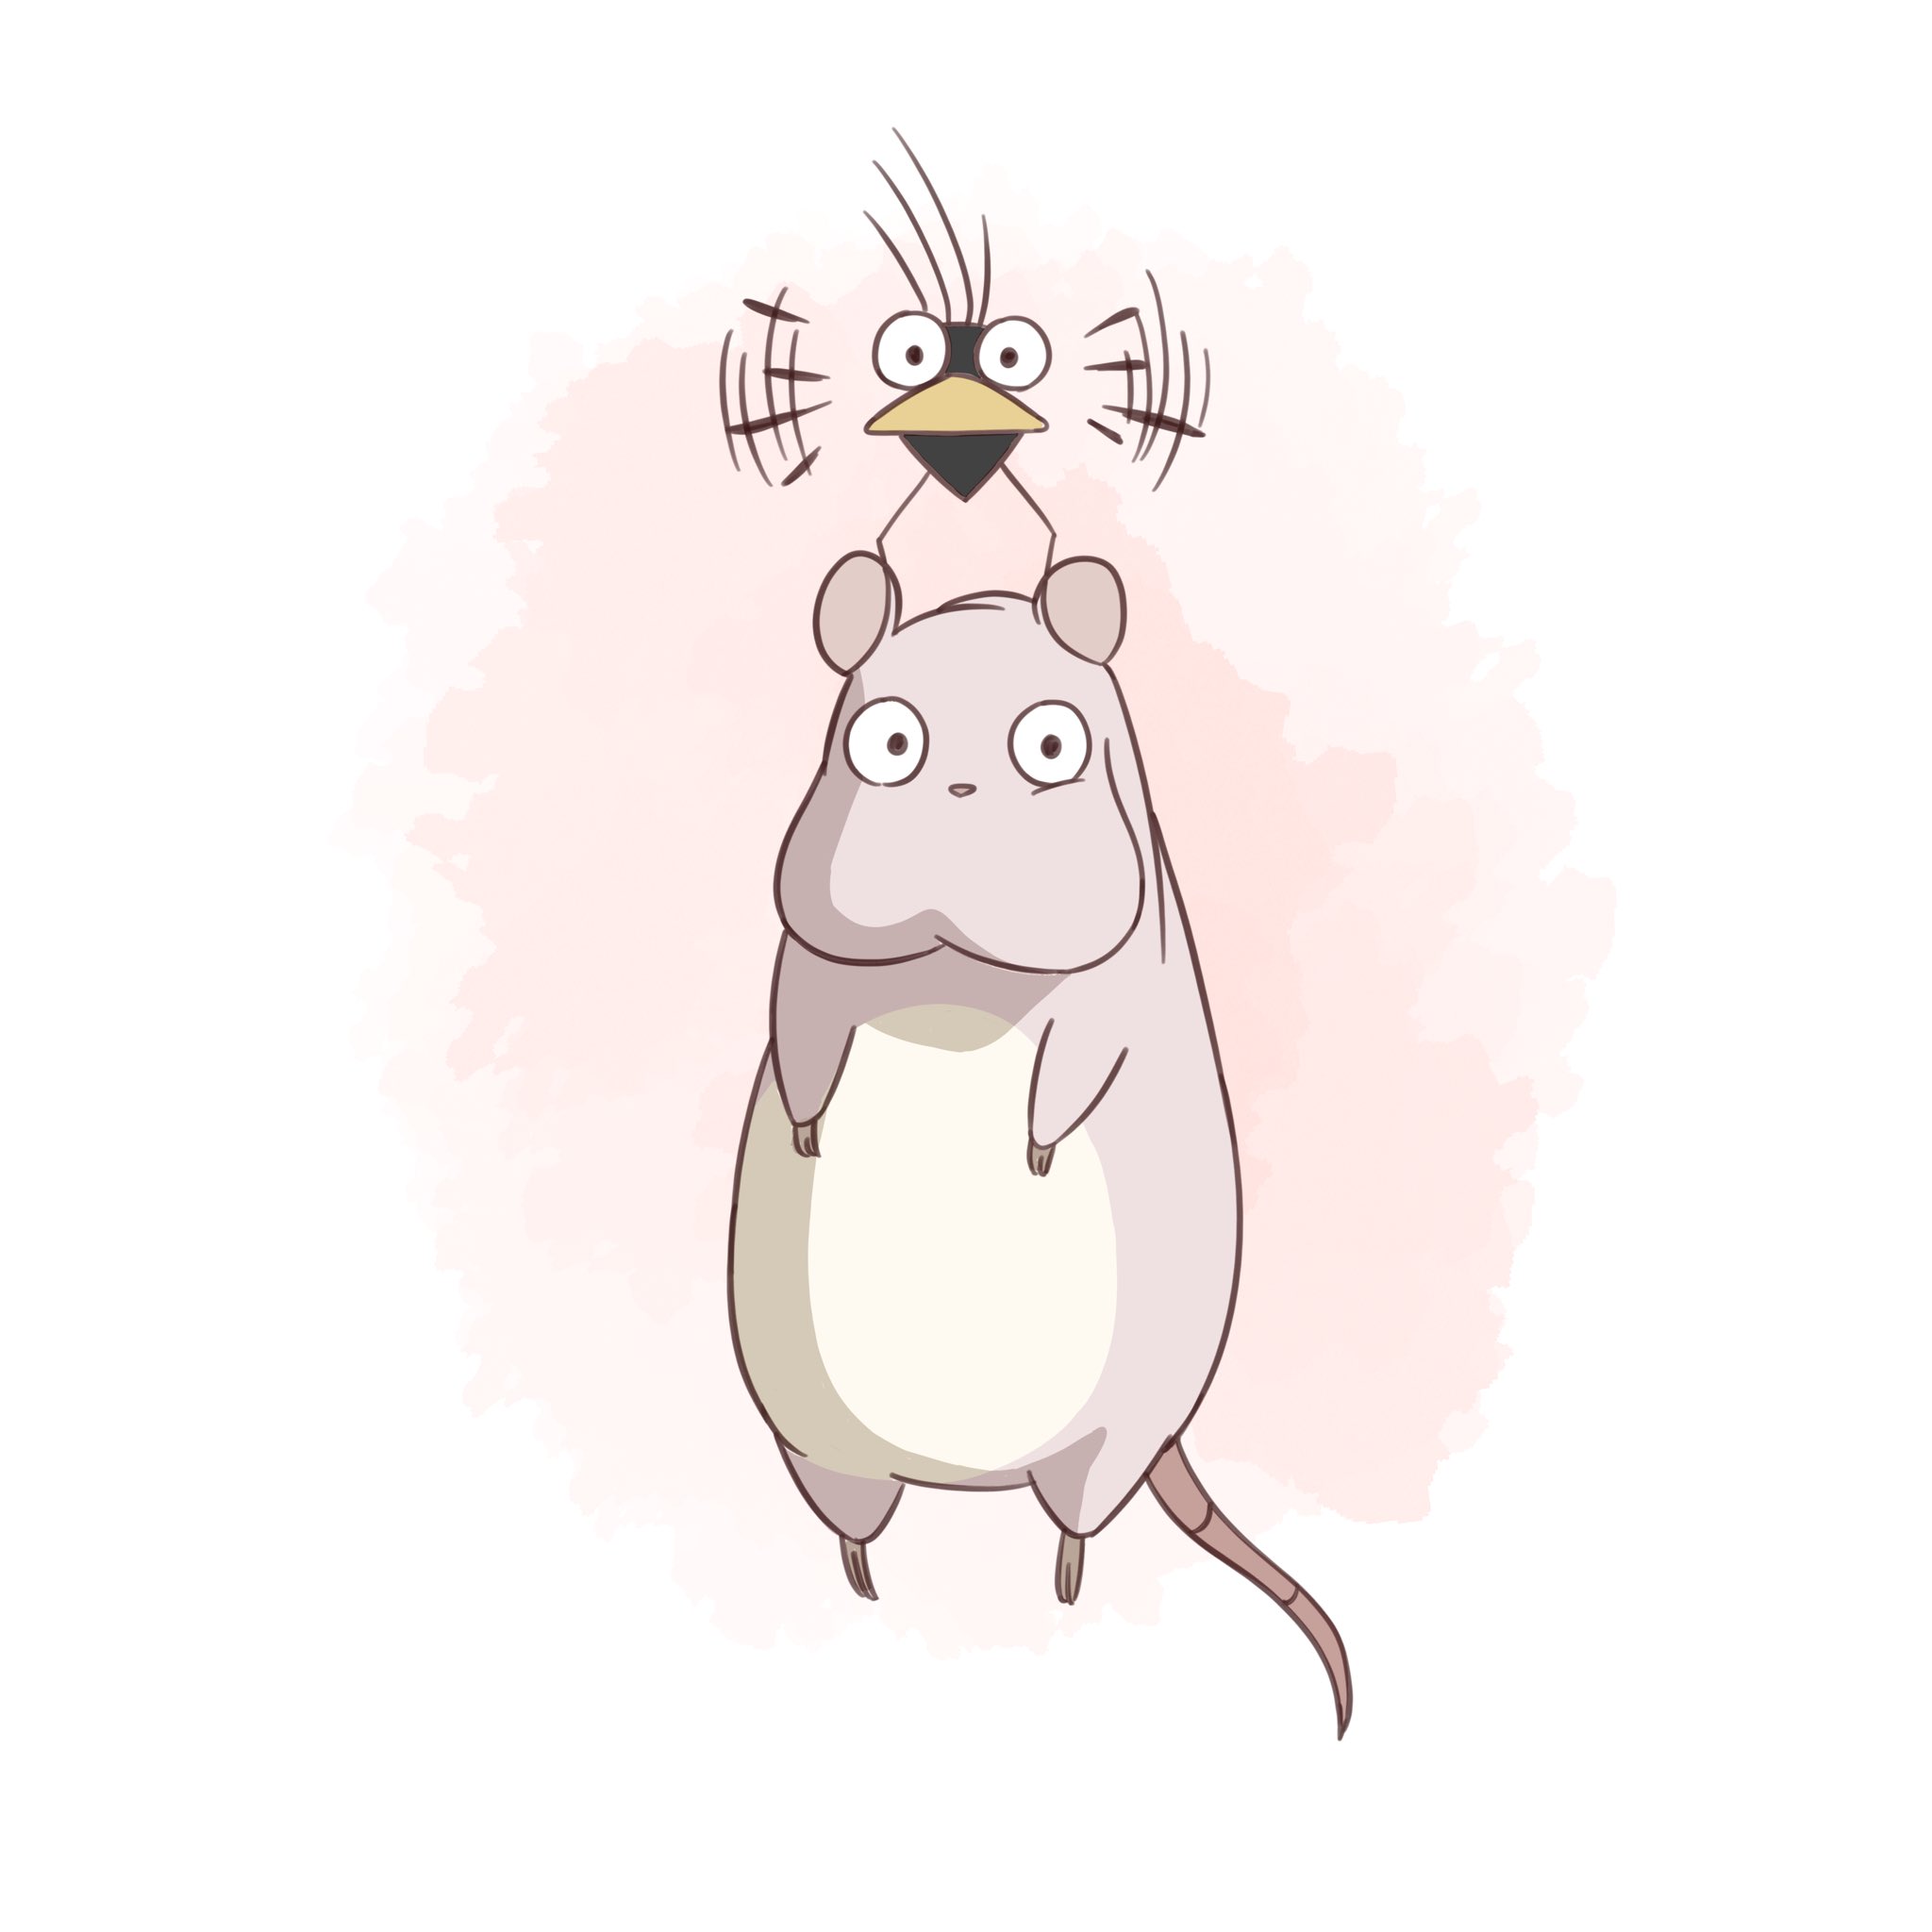 ゆう 坊ネズミとハエドリ描きました この2匹可愛いですよね 千と千尋の神隠し 坊ネズミ ハエドリ ジブリ イラスト 絵描きさんと繋がりたい Studioghibli T Co On0rlvpo1h Twitter